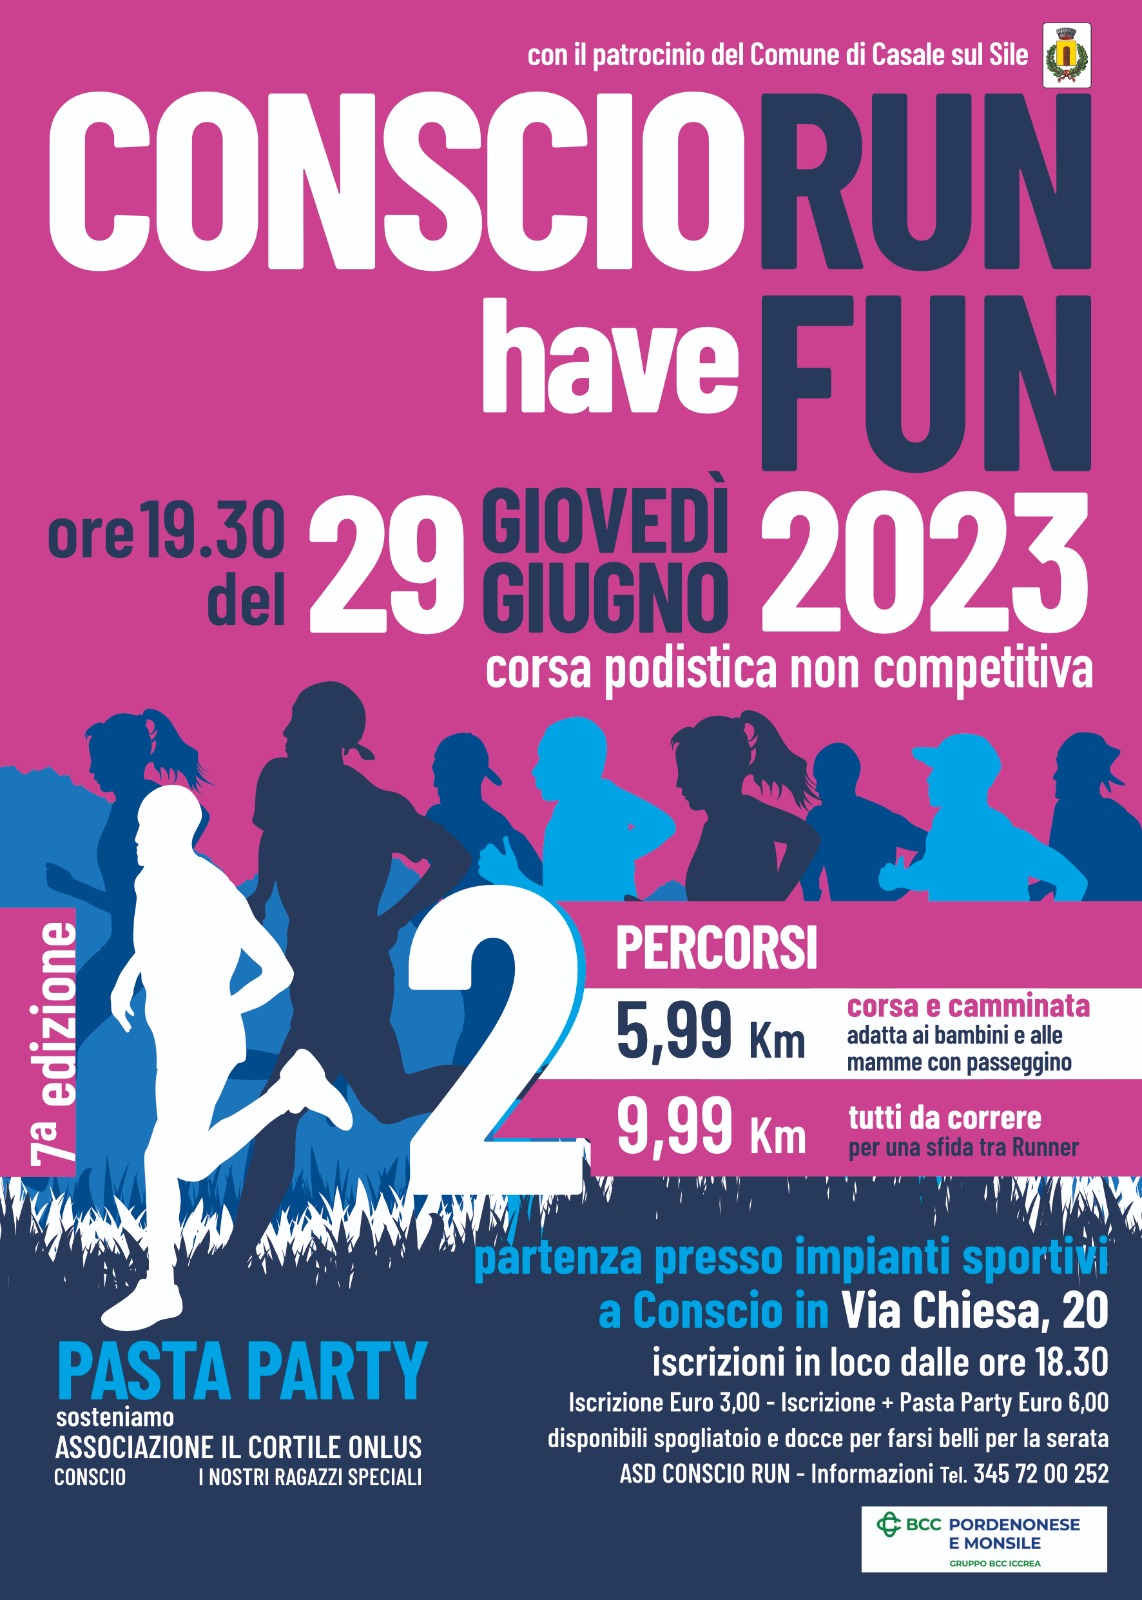 Conscio RUN 2023 - have FUN - corsa podistica non competitiva